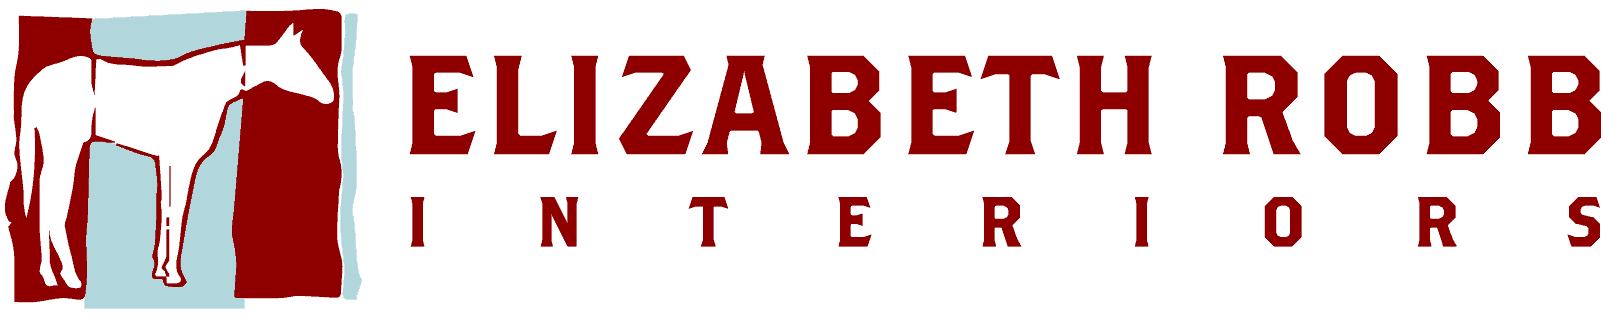 red-horizontal-logo